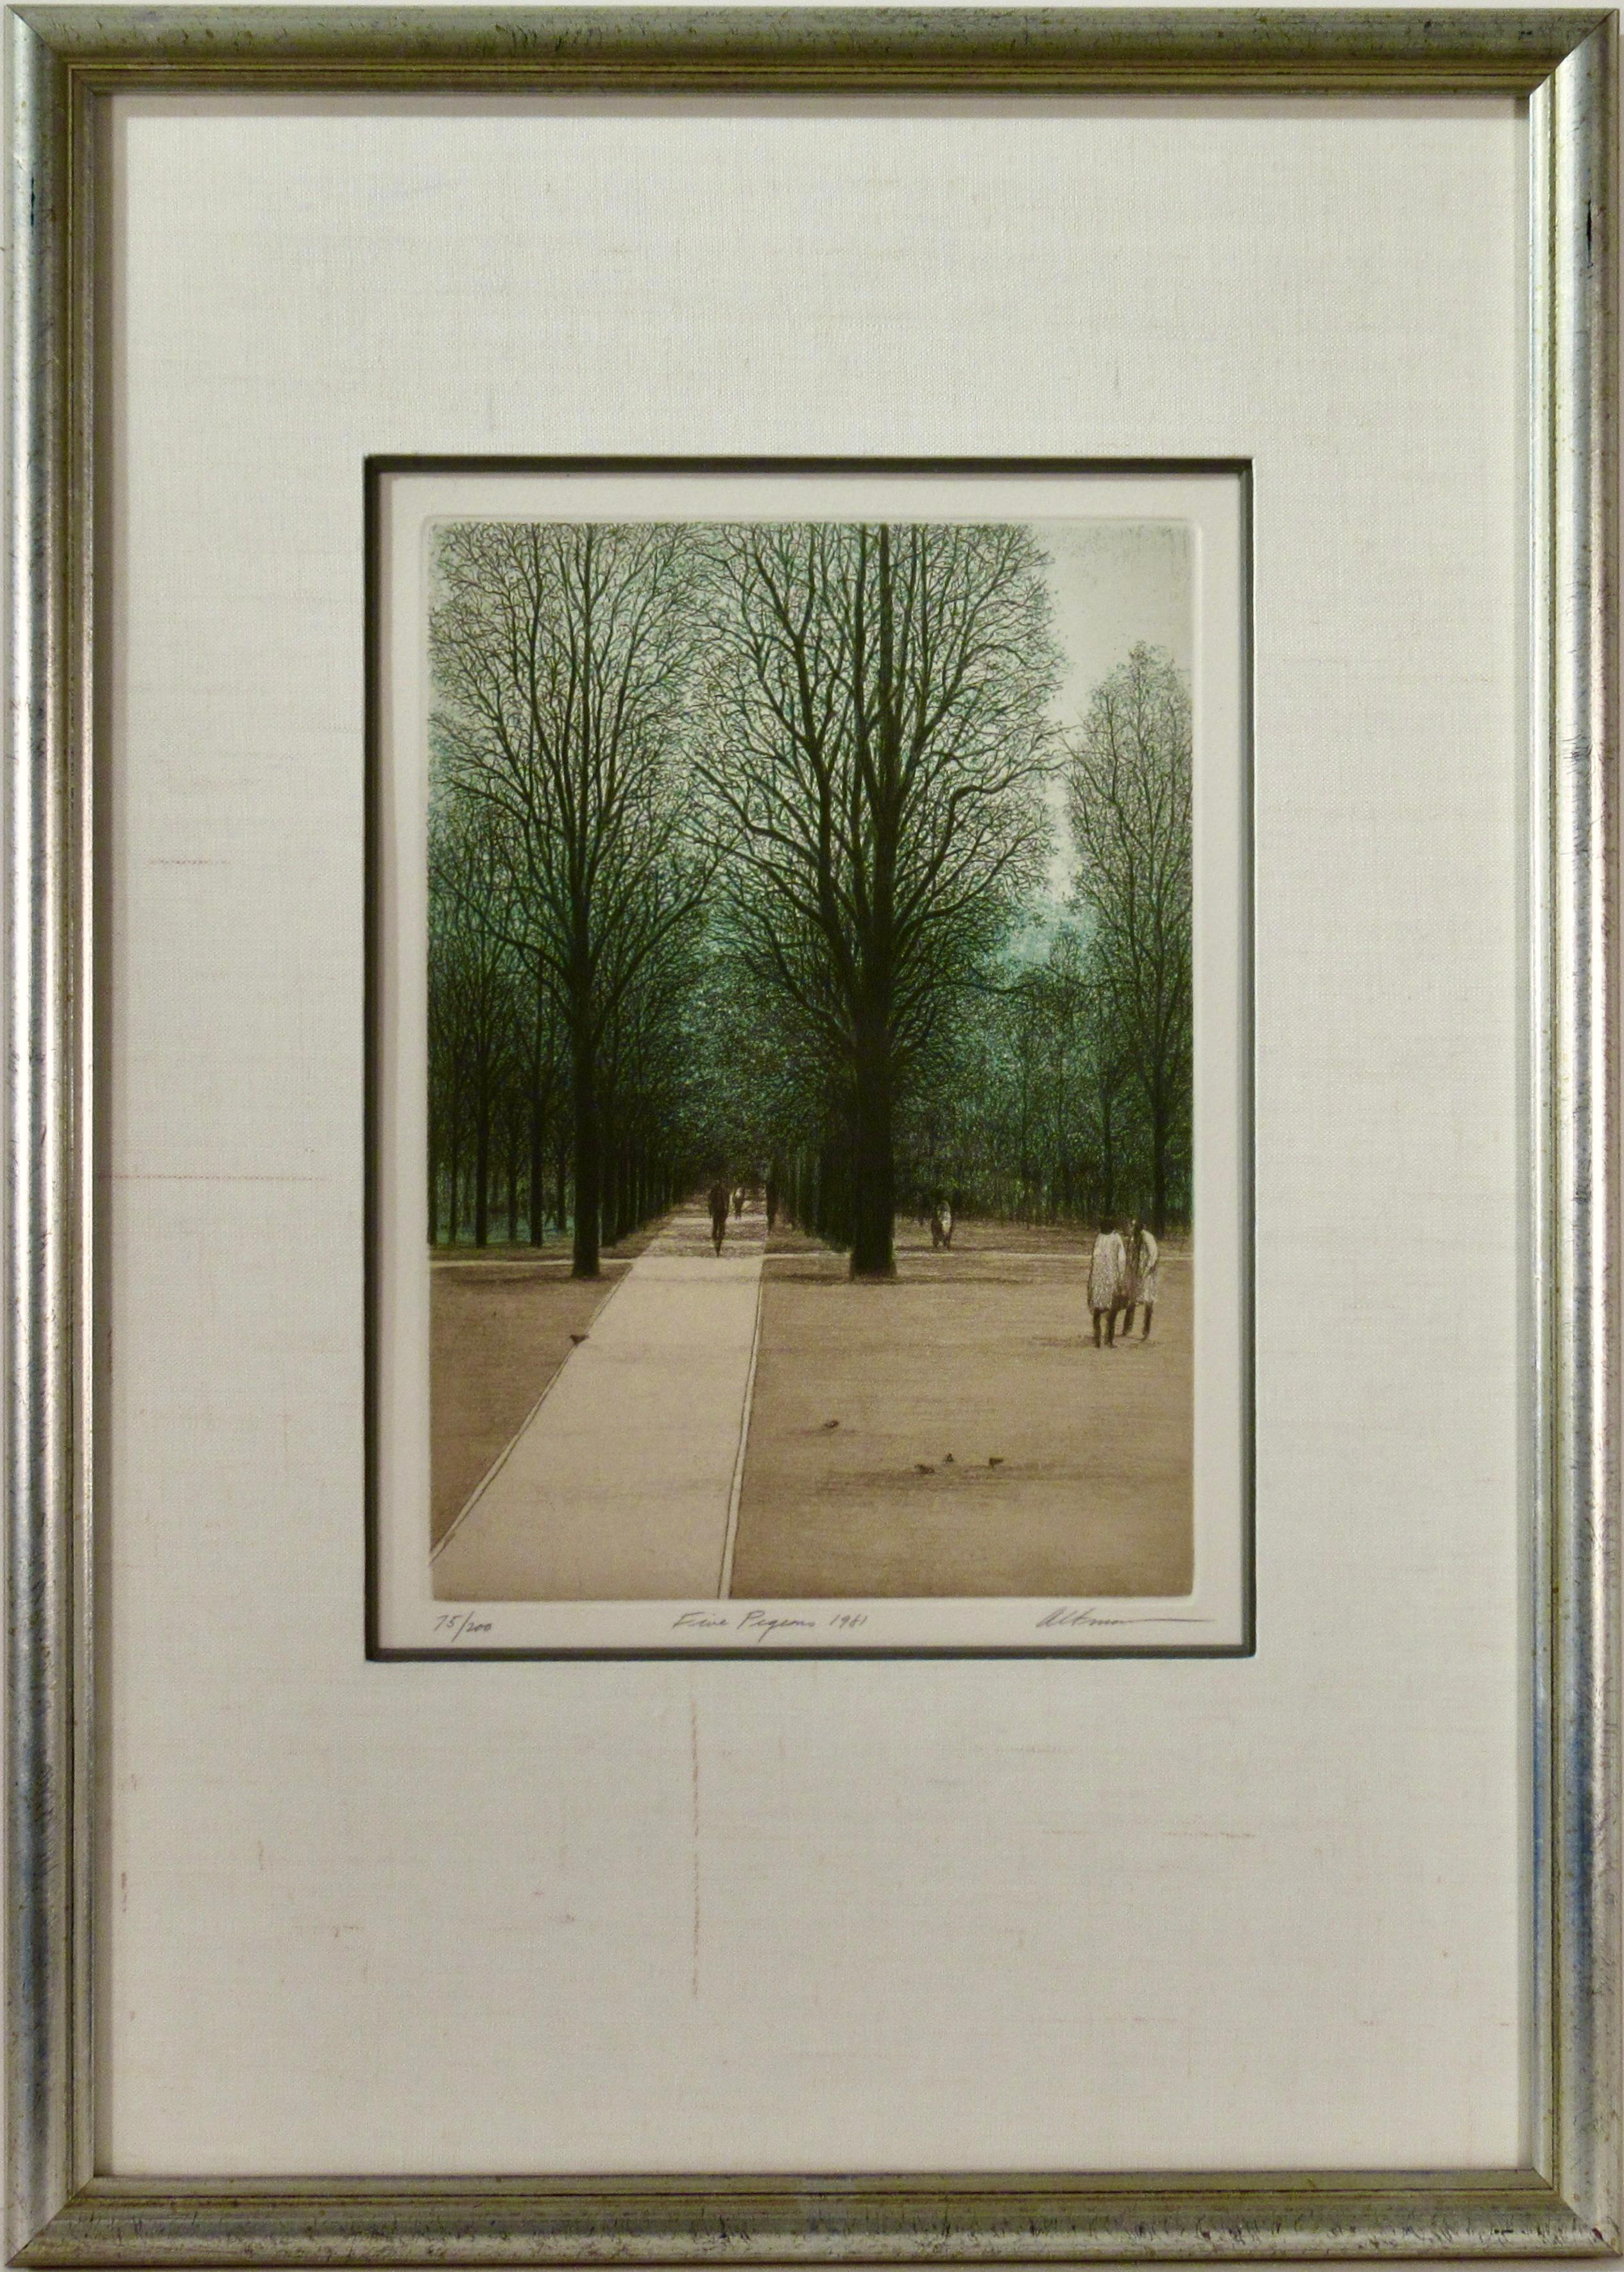 Harold Altman Landscape Print - Five Pigeons (Jardin du Luxembourg, Paris)